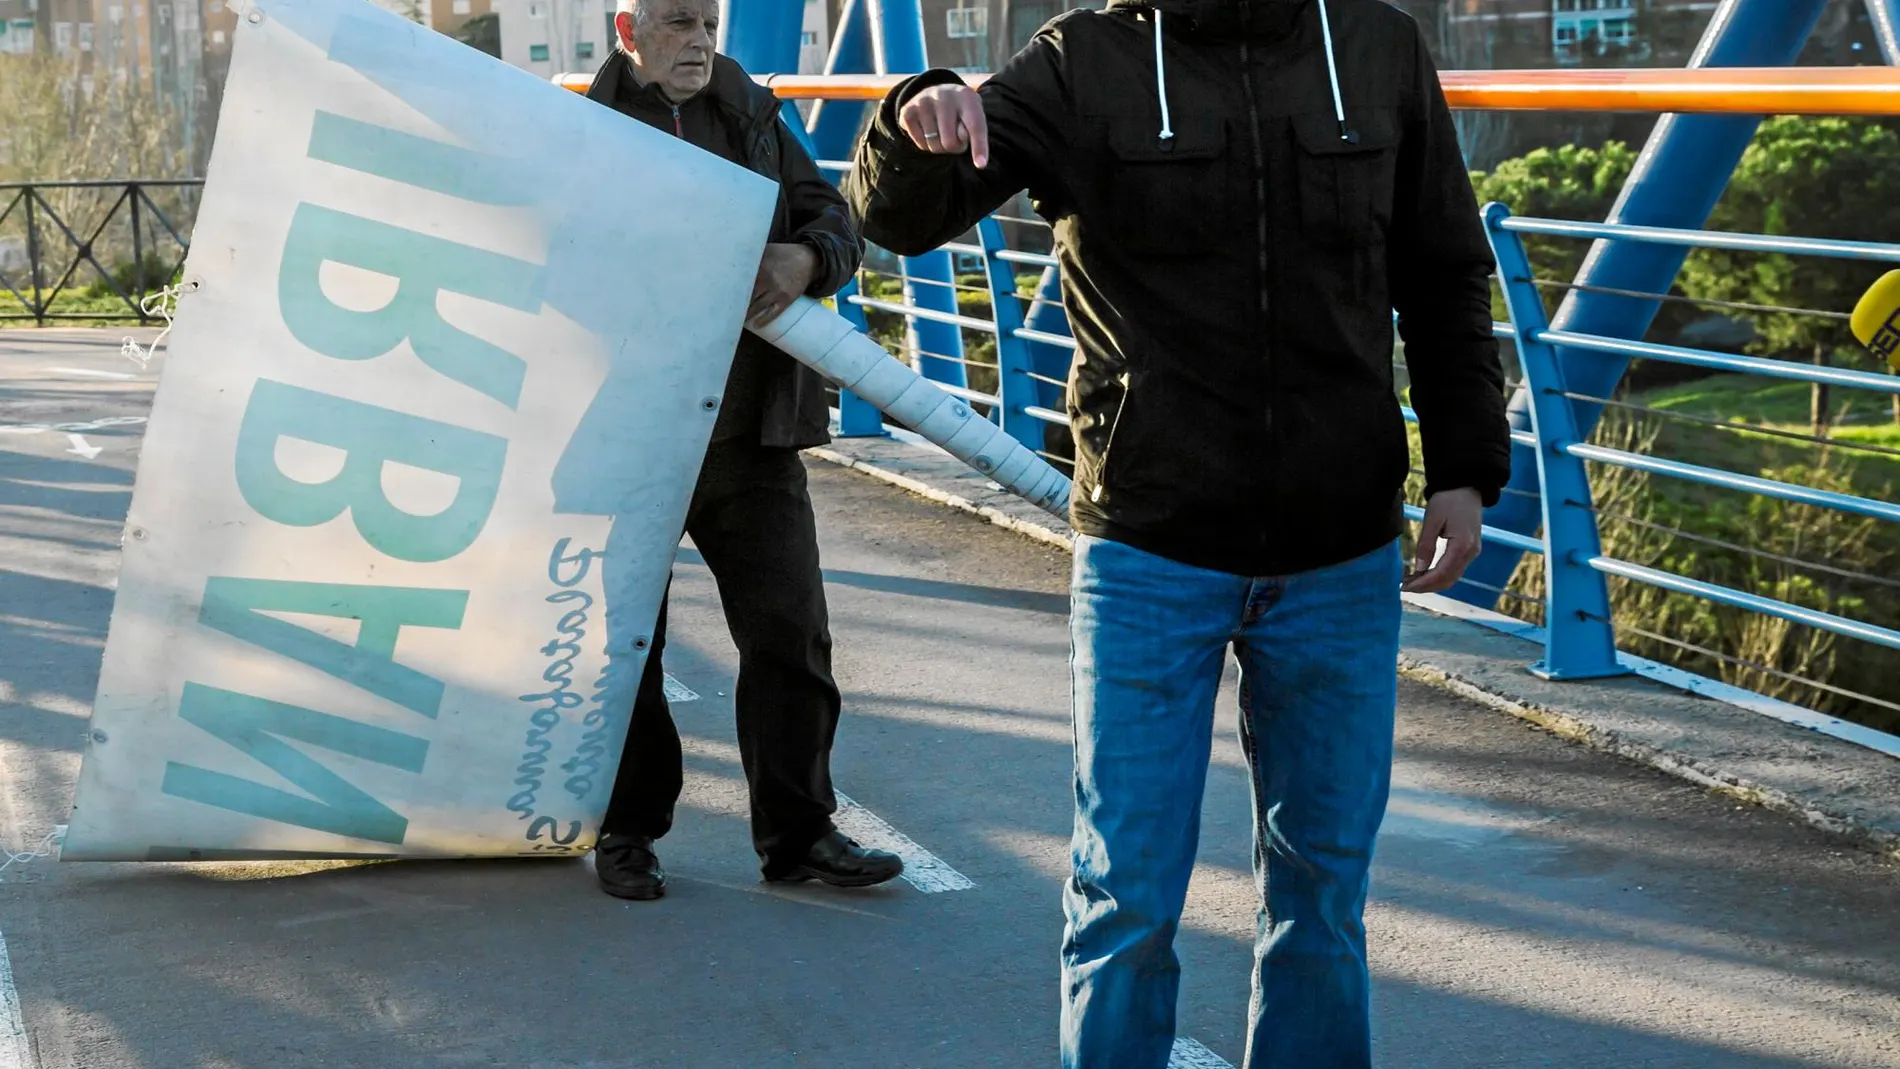 Sergio González Fernádez, el pasado 26 de febrero, cuando irrumpió en la pasarela de la A-5 para boicotear el acto del PP contra los semáforos